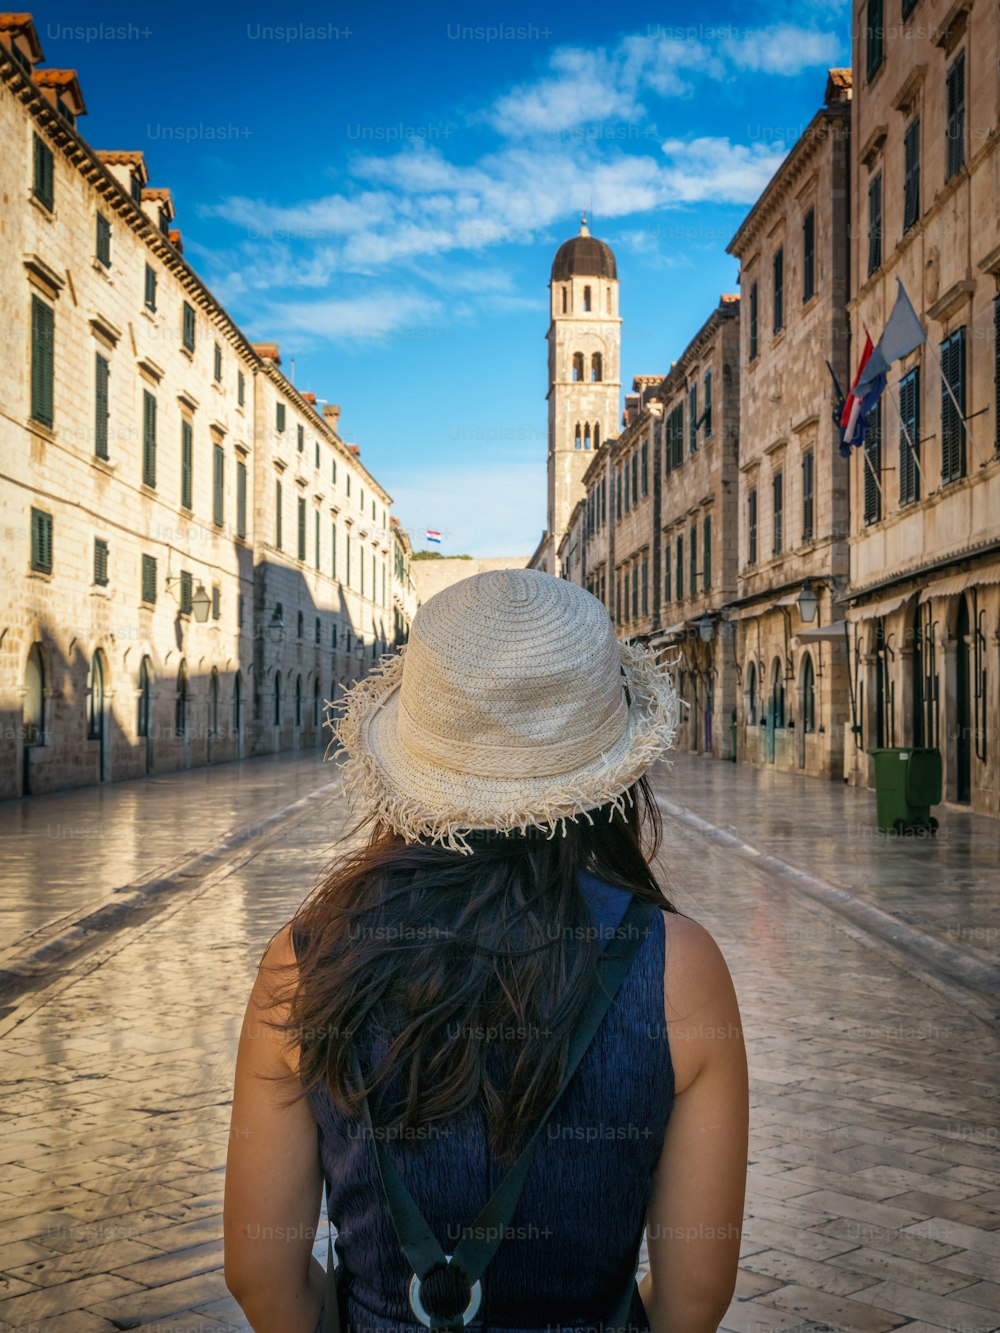 크로아티아의 두브 로브 니크 (Dubrovnik)의 구시 가지에있는 Stradun (Placa)의 역사적인 거리에서 여행자 산책 - 크로아티아의 저명한 여행지. 두브 로브 니크 구시 가지는 1979 년 유네스코 세계 문화 유산으로 지정되었습니다.